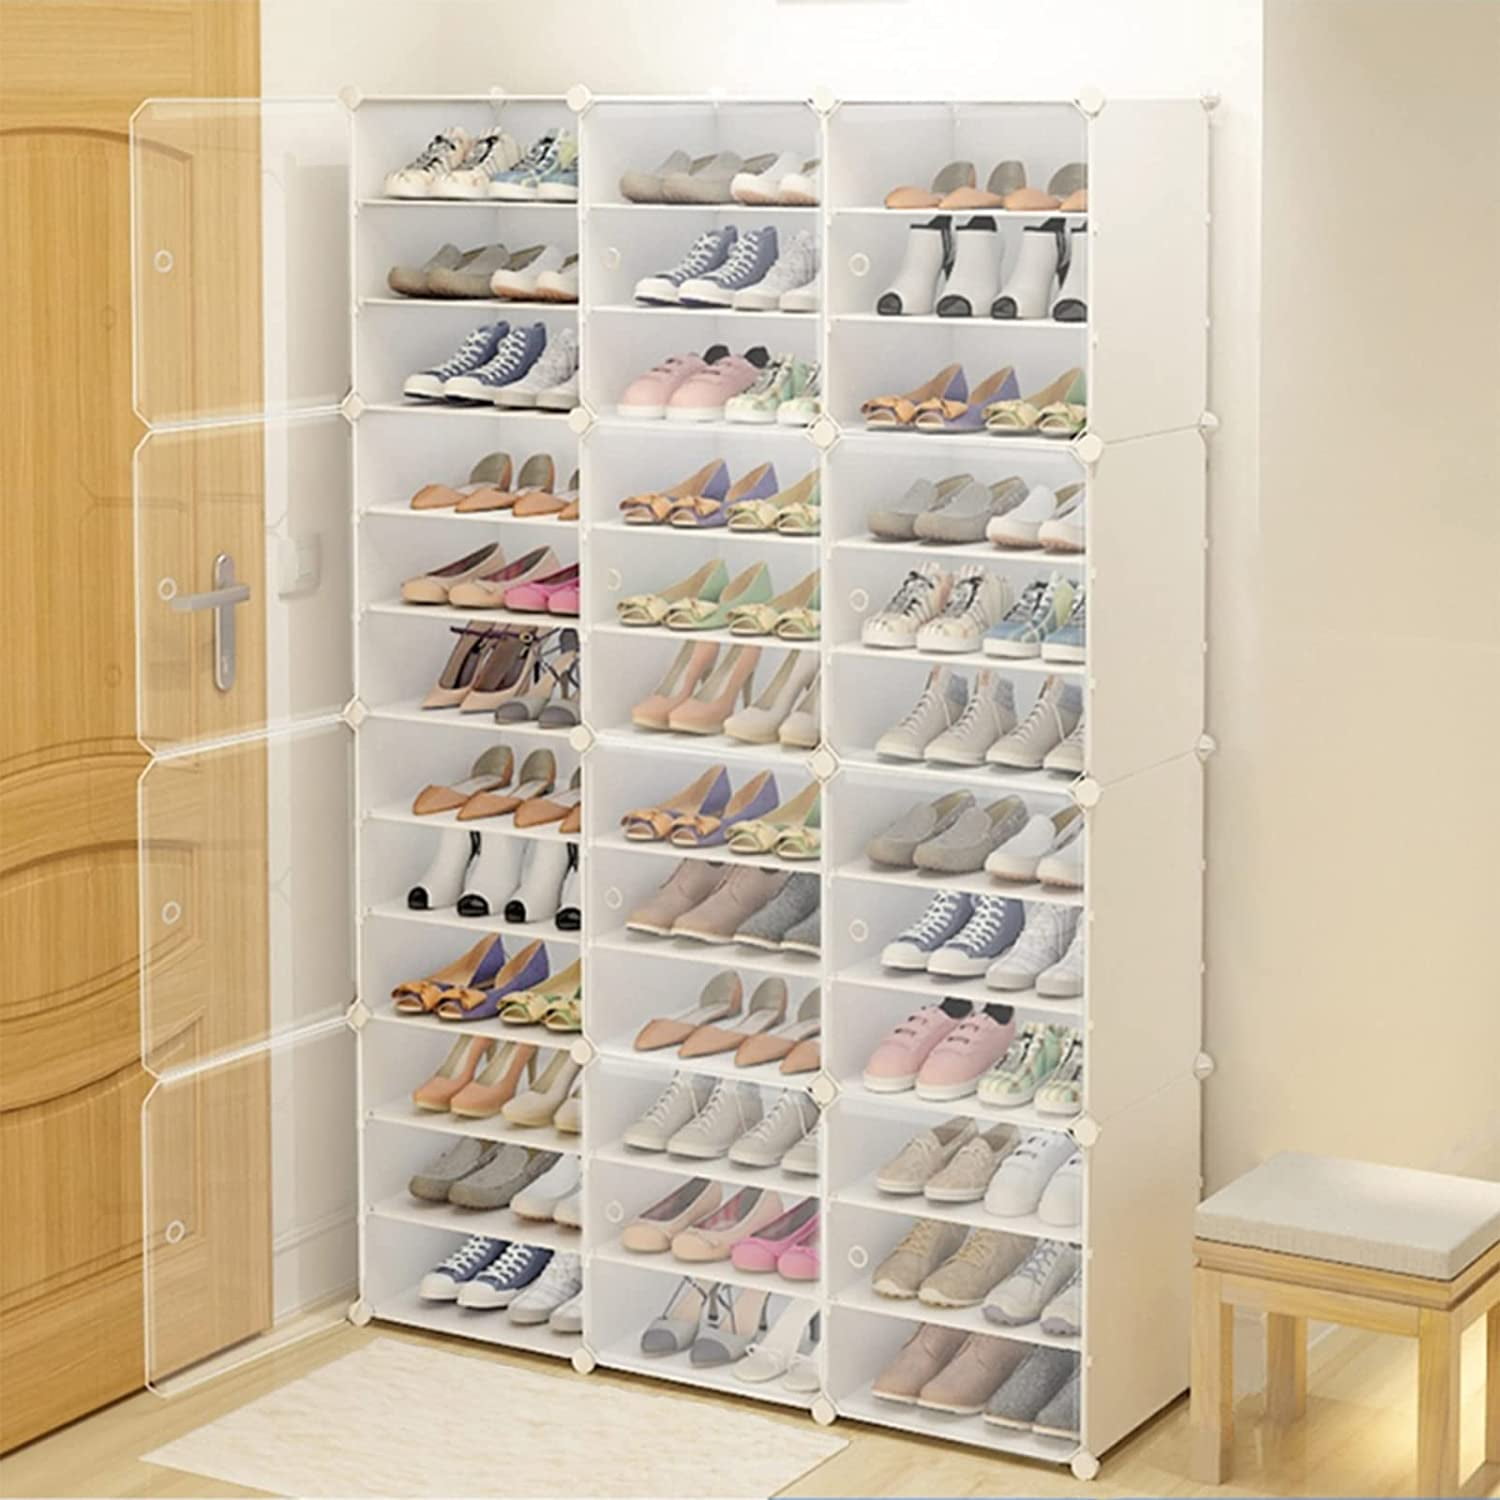 Shoe Storage Cabinet Shoe Rack Stand Unit Organiser Holder Dustproof Adjustable 